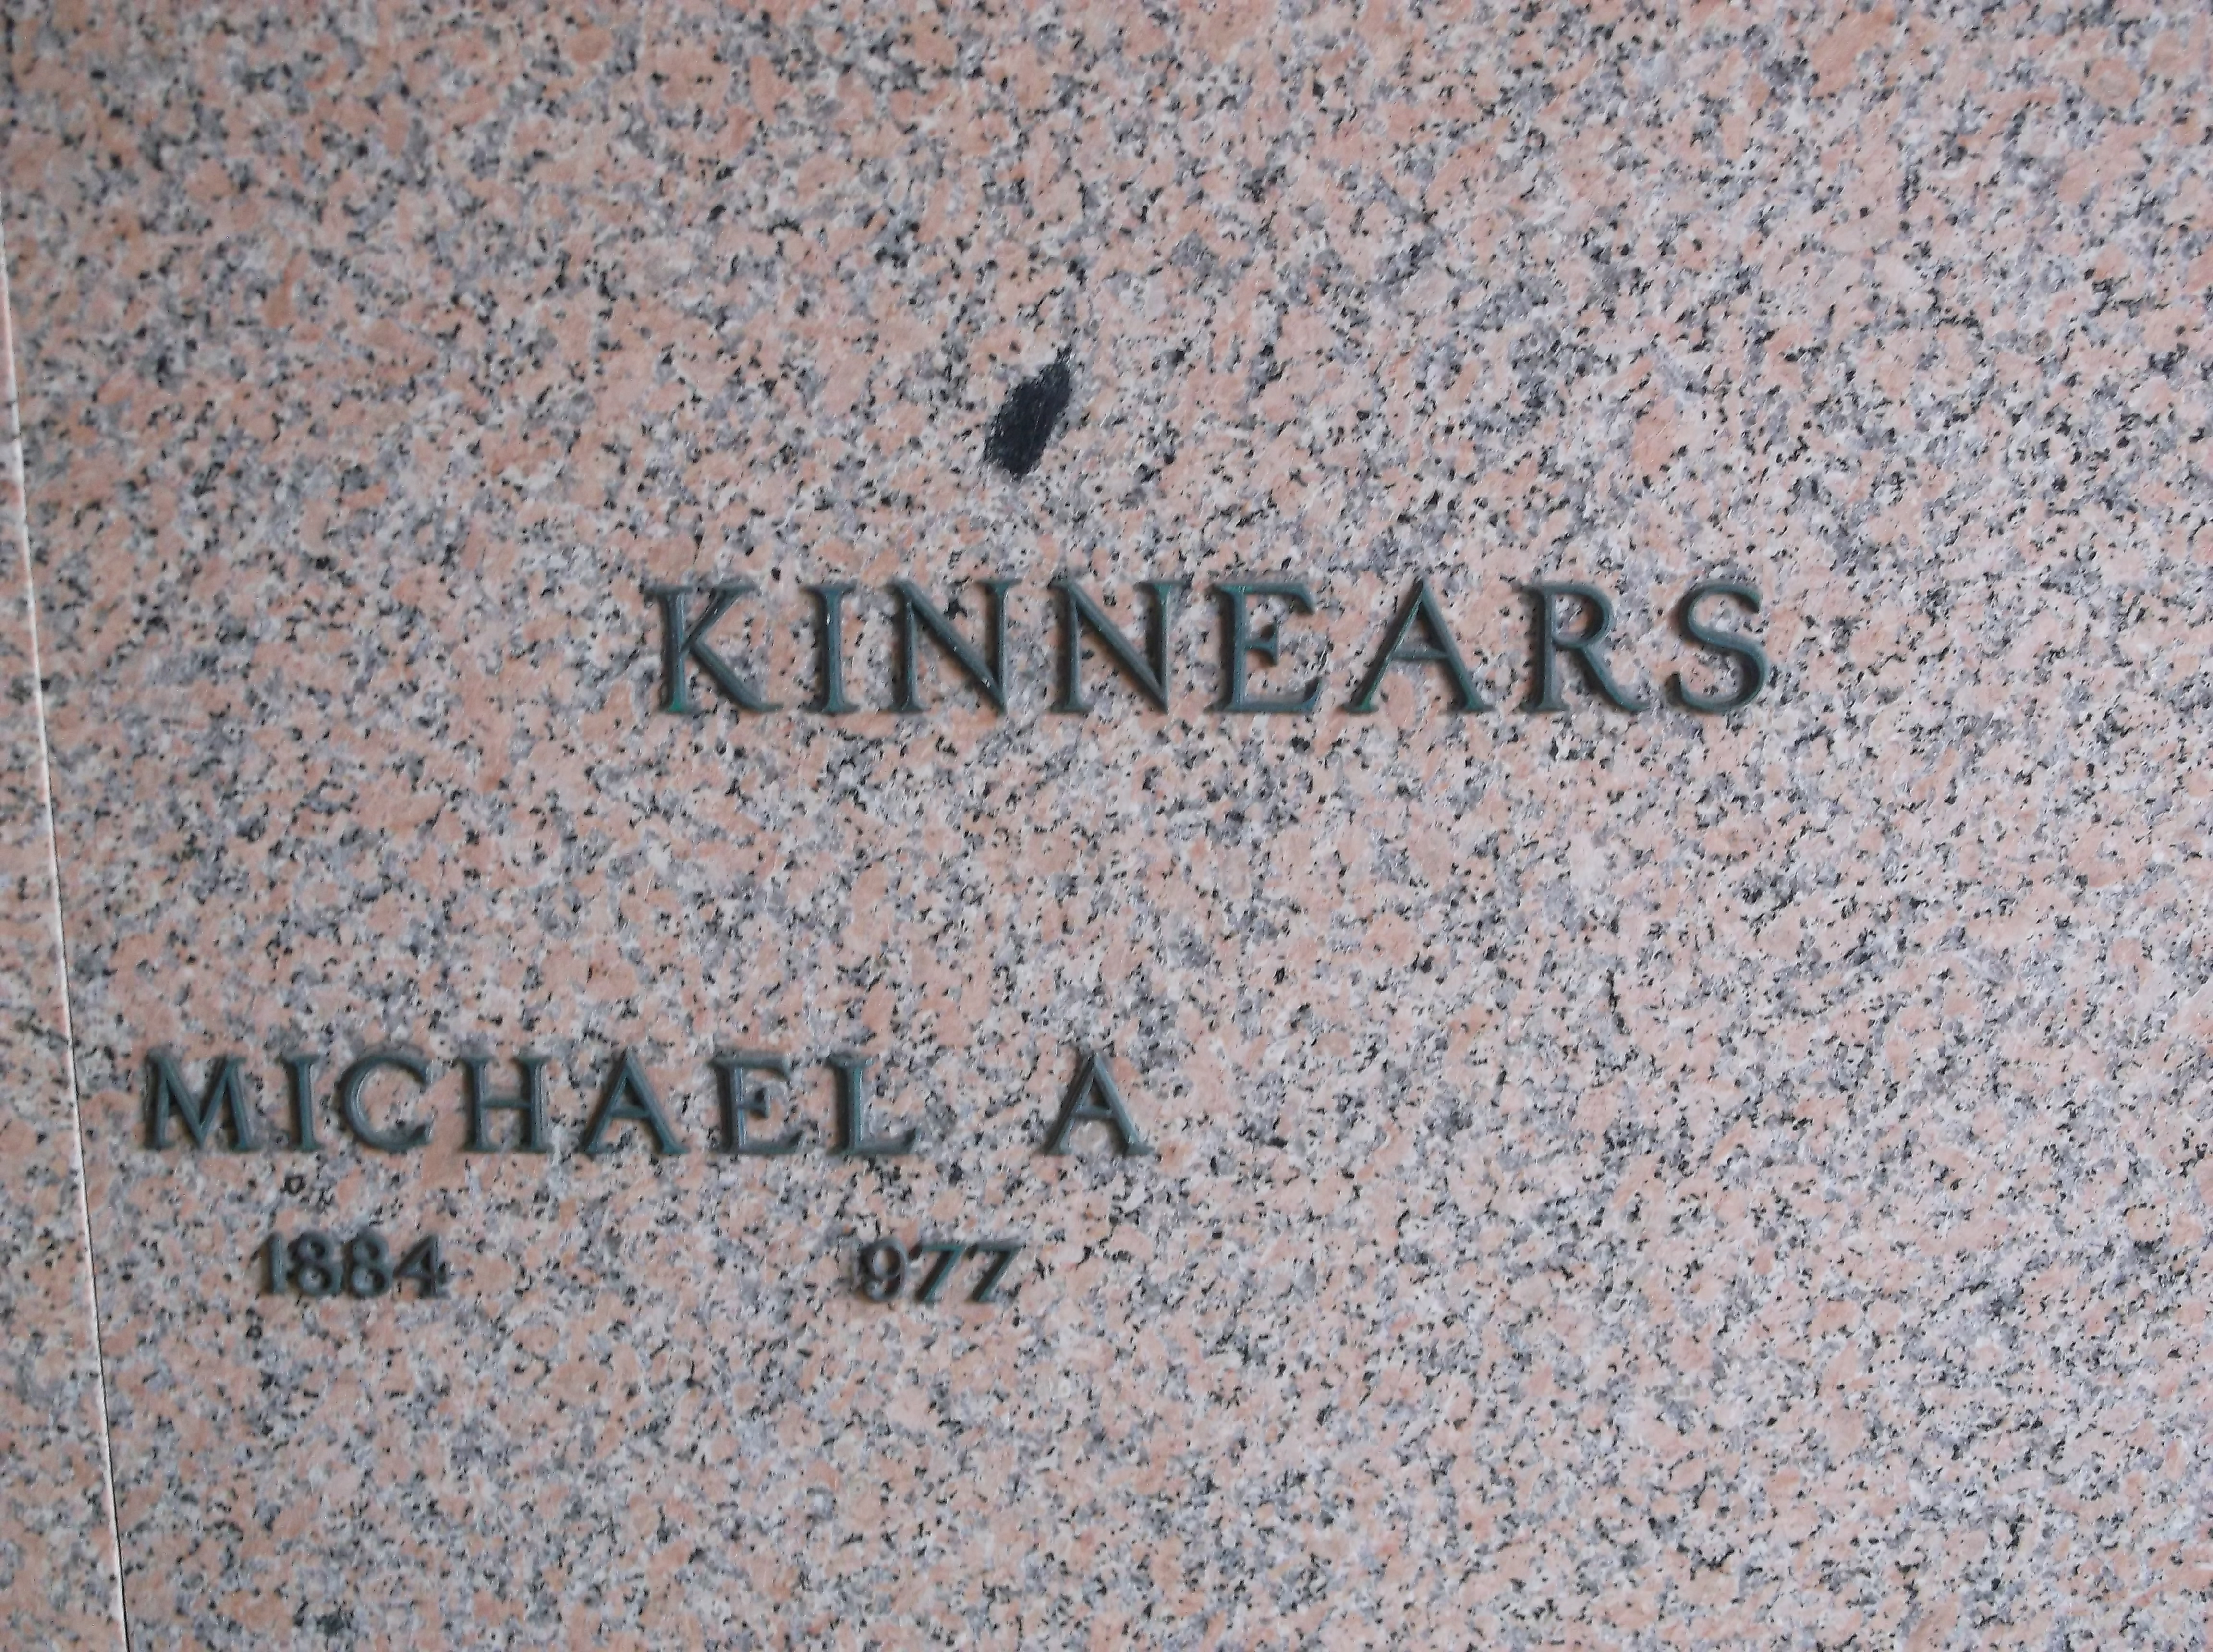 Michael A Kinnears